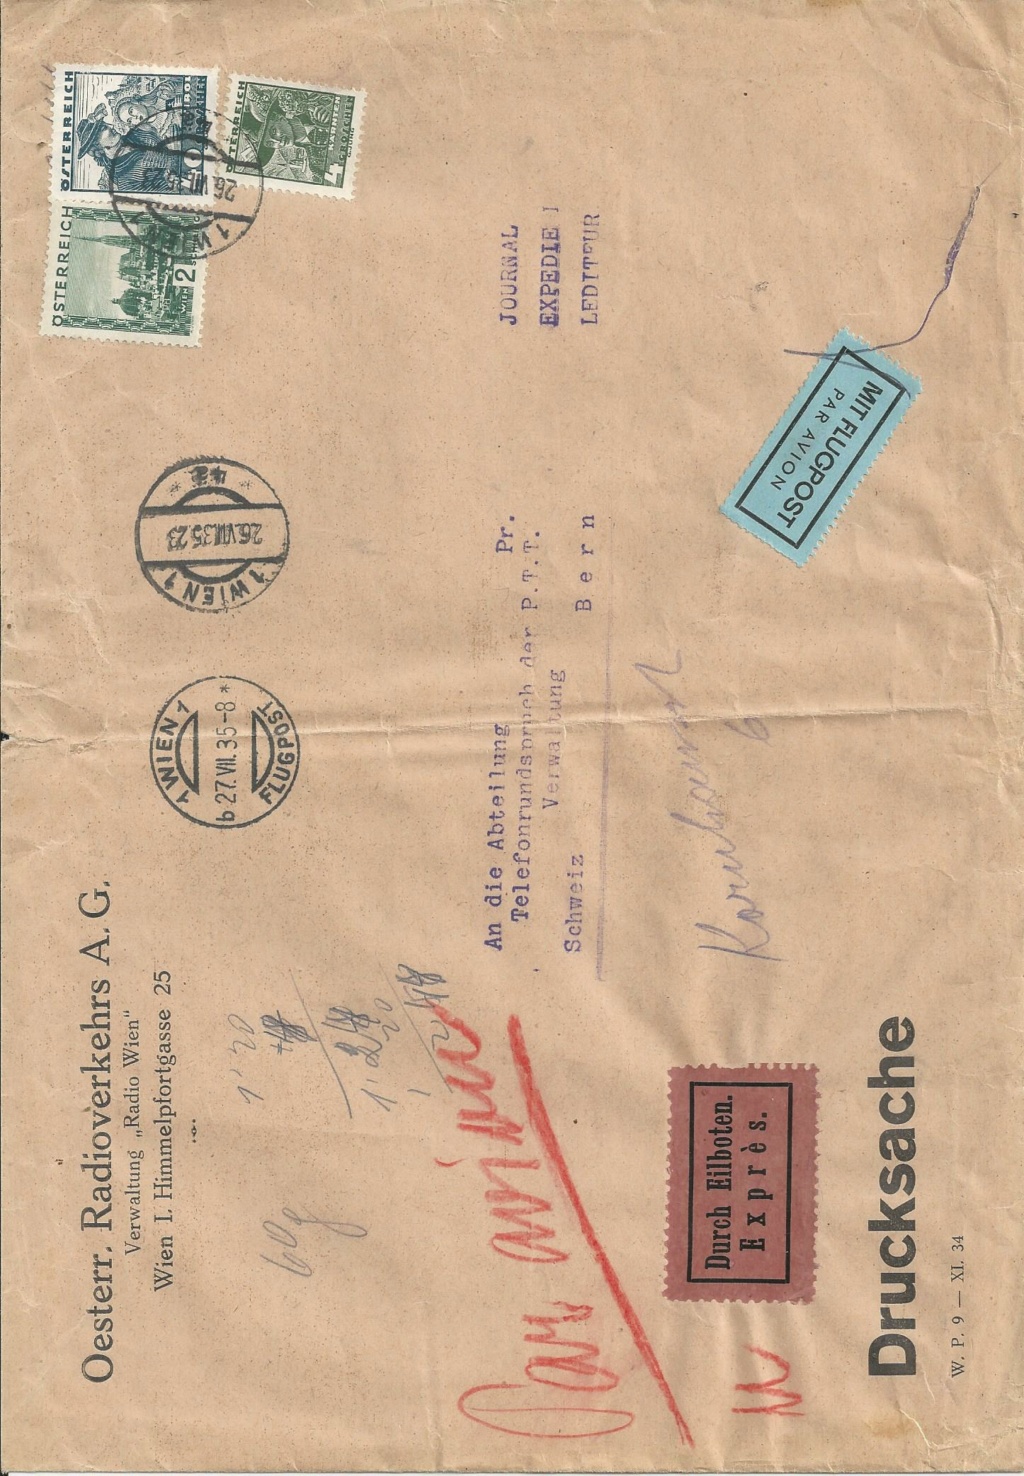  - Österreich 1925 - 1938 - Seite 20 Bild1355